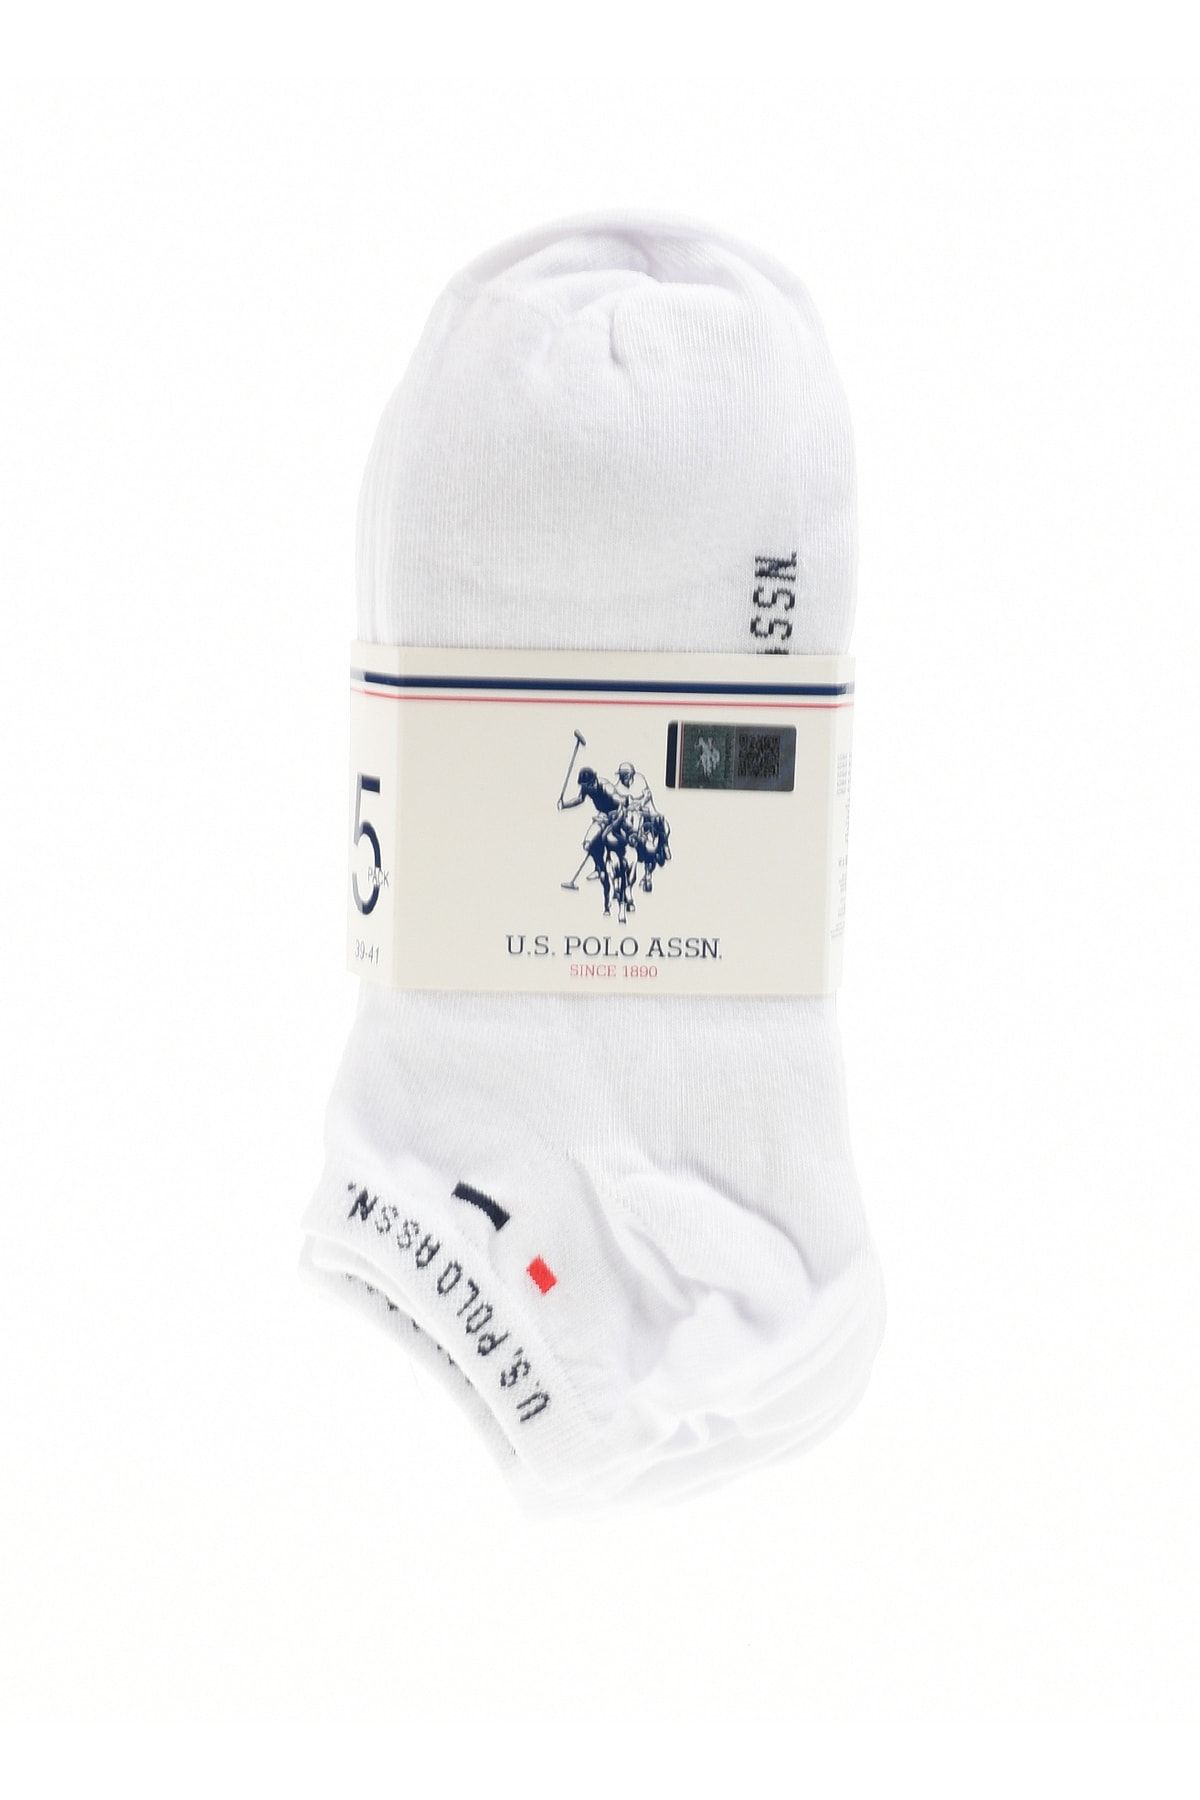 U.S. Polo Assn. Çorap, 1 - 2, Beyaz